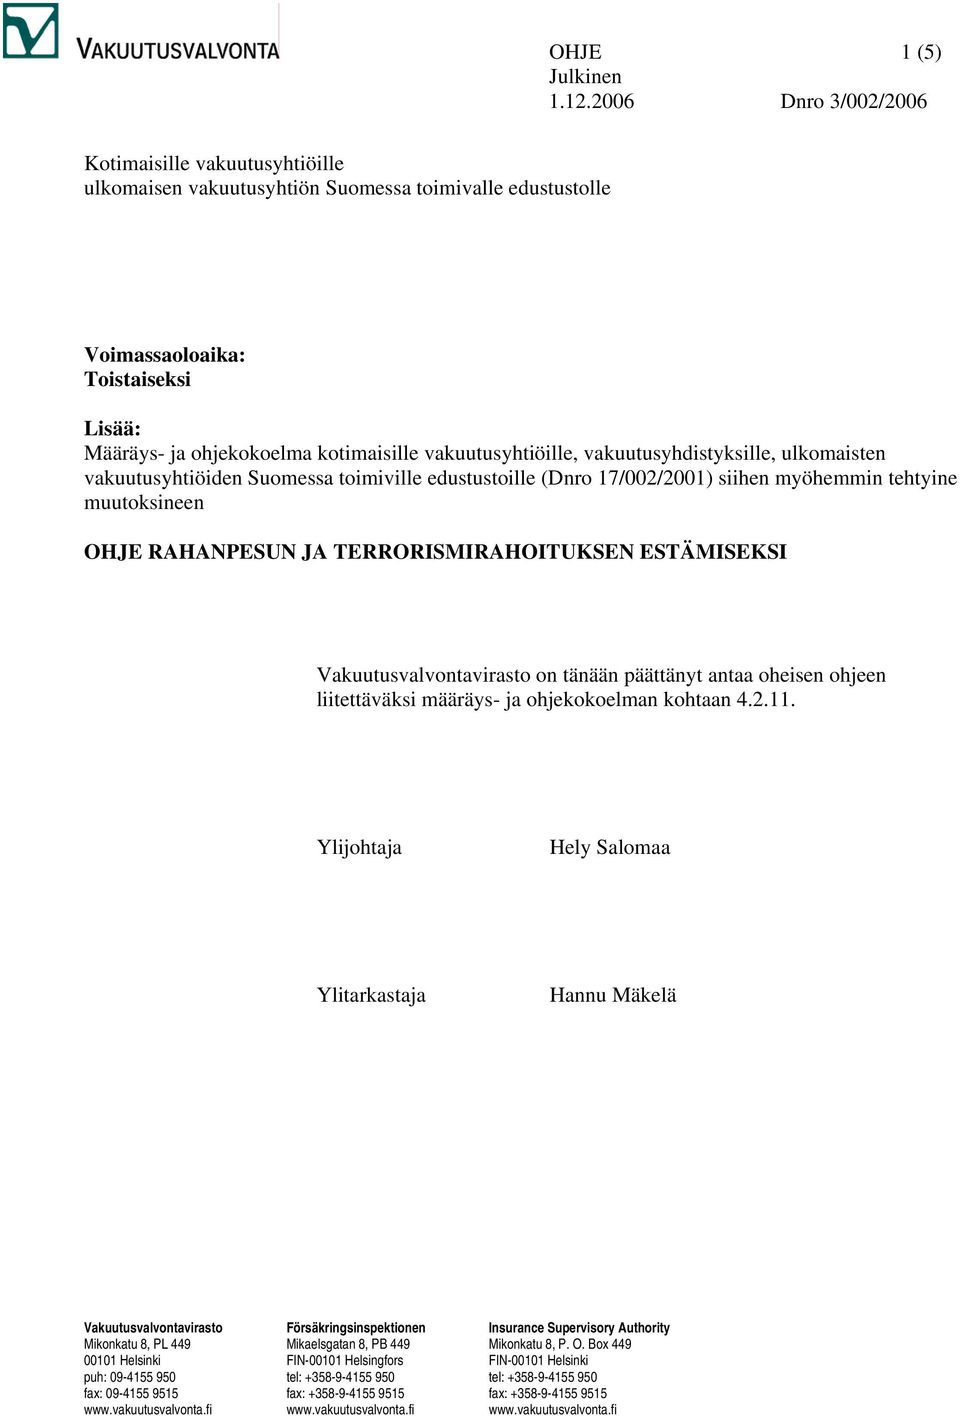 vakuutusyhtiöille, vakuutusyhdistyksille, ulkomaisten vakuutusyhtiöiden Suomessa toimiville edustustoille (Dnro 17/002/2001) siihen myöhemmin tehtyine muutoksineen OHJE RAHANPESUN JA